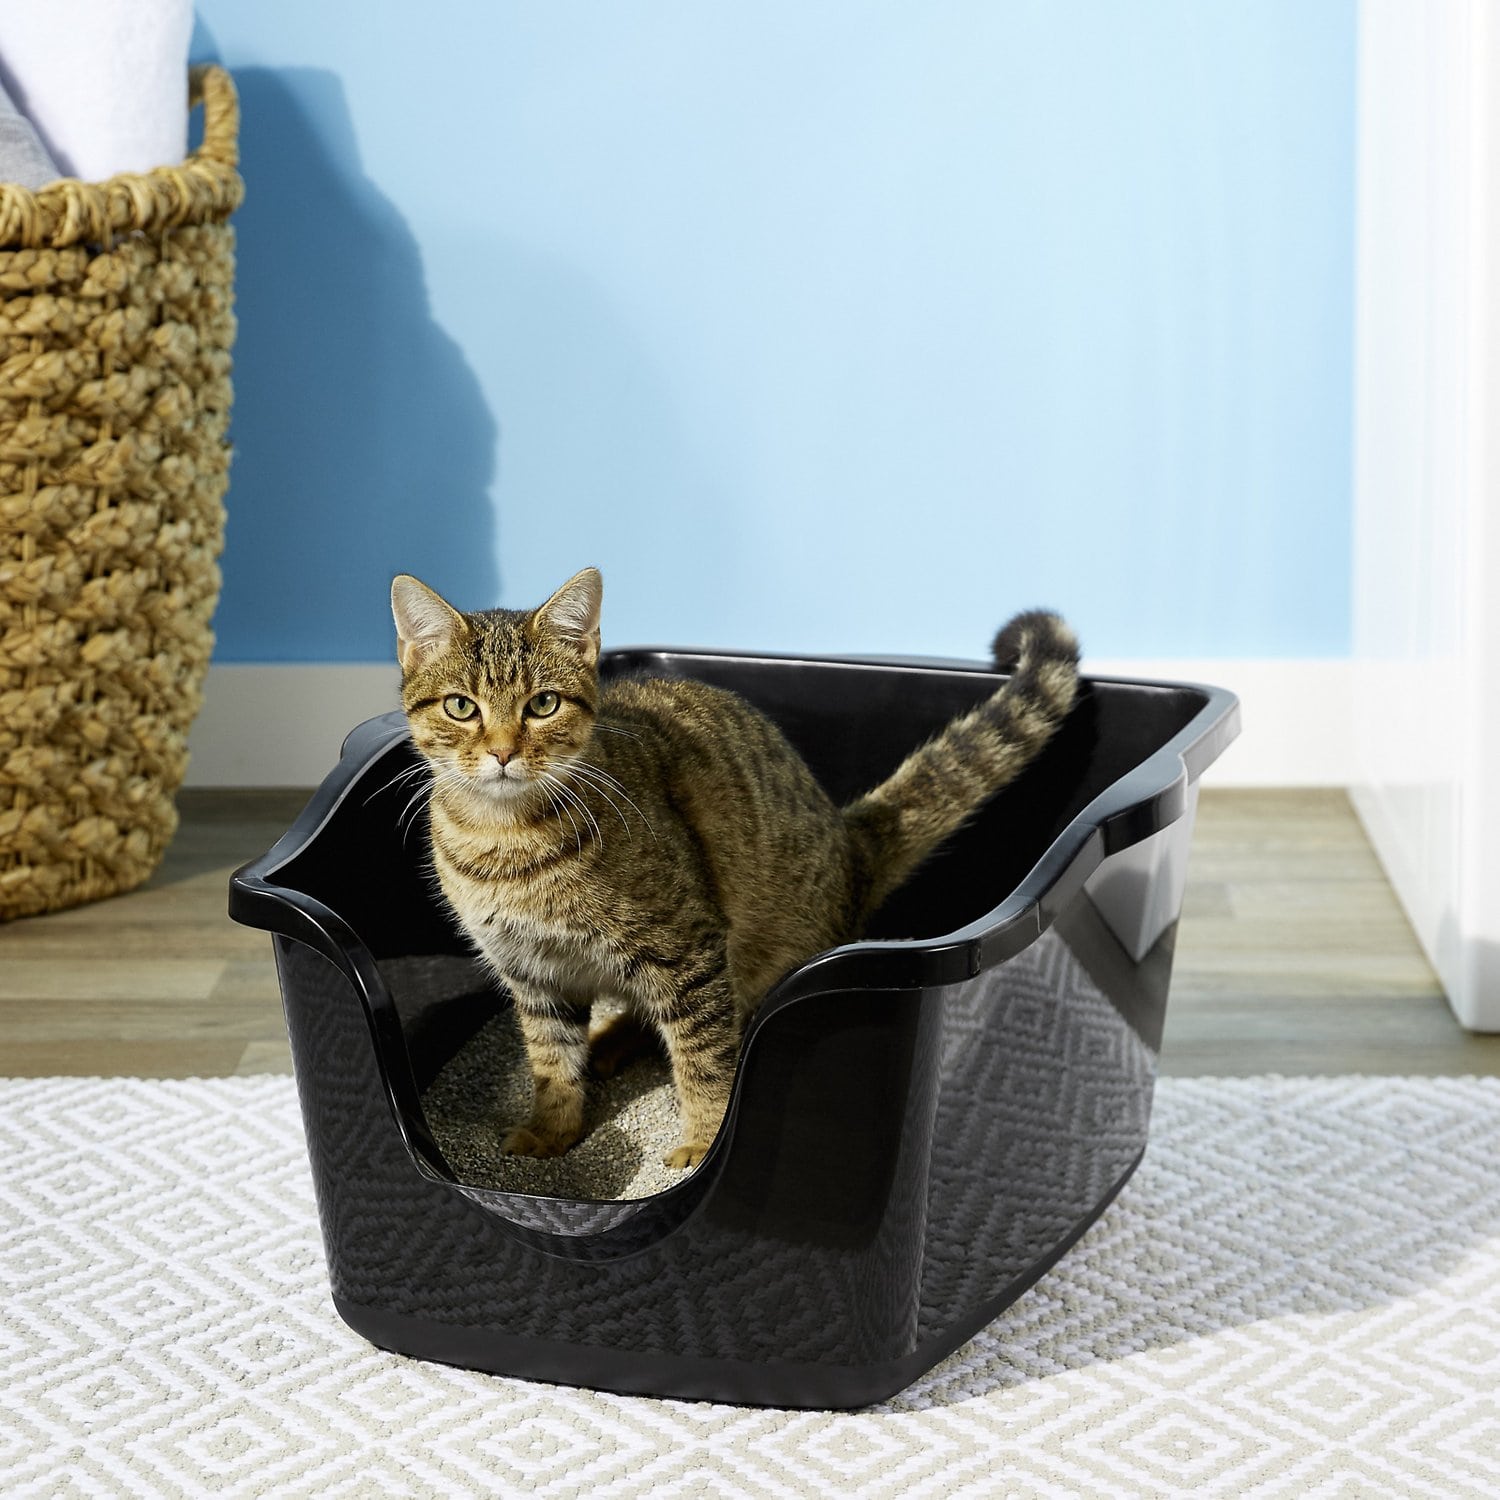 Caixa de areia para gatos – importância e cuidados